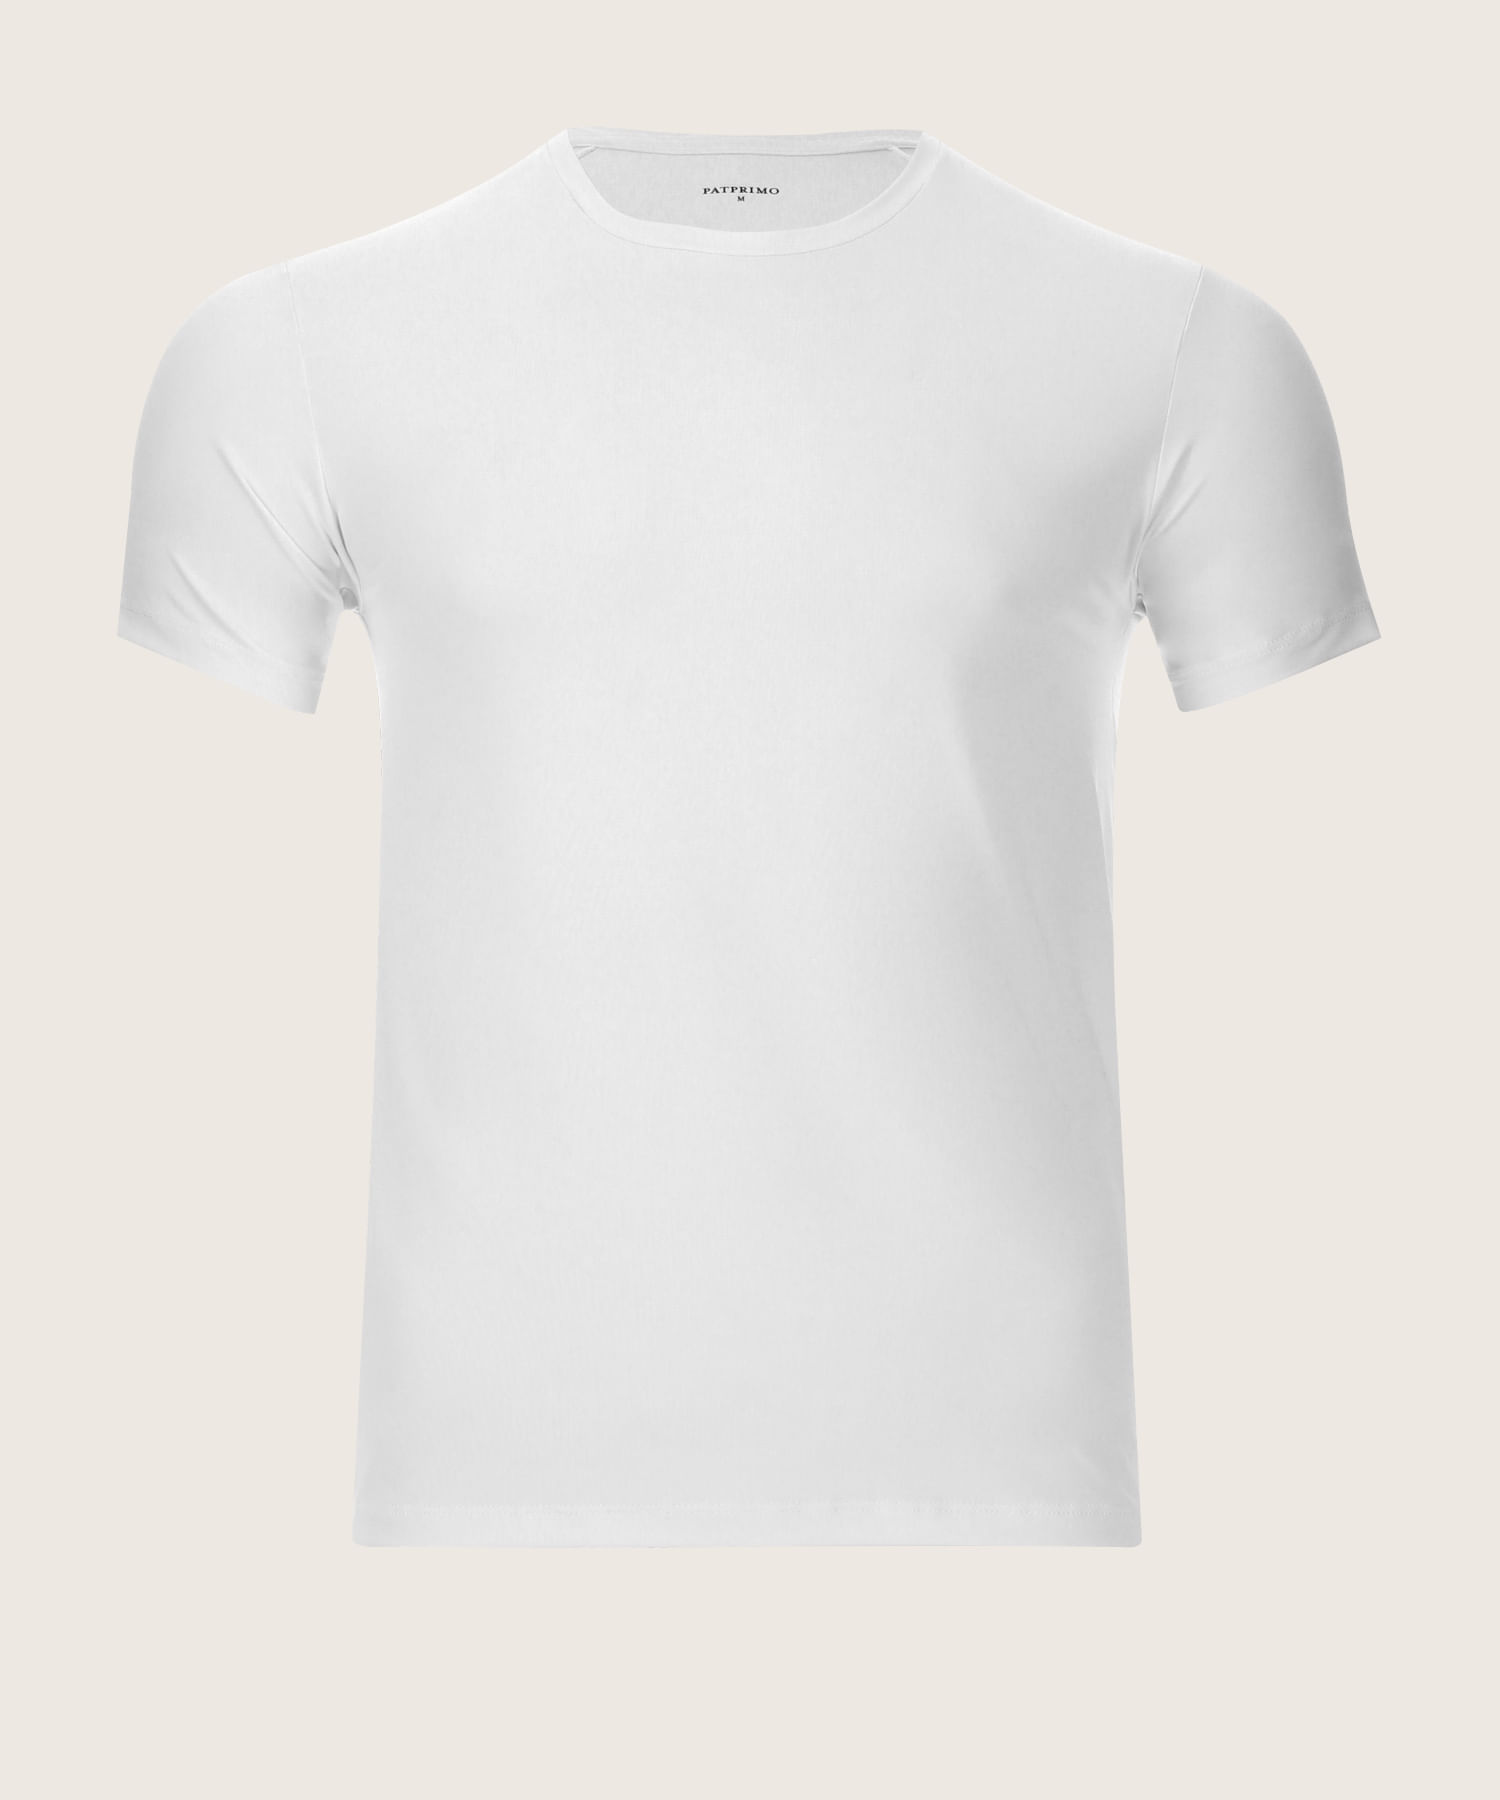  Camisas para hombres al aire libre cuello redondo manga corta  camisetas hip hop impreso camisas para hombre camisetas al aire libre  camisetas Dry Fit Tops, Blanco : Ropa, Zapatos y Joyería